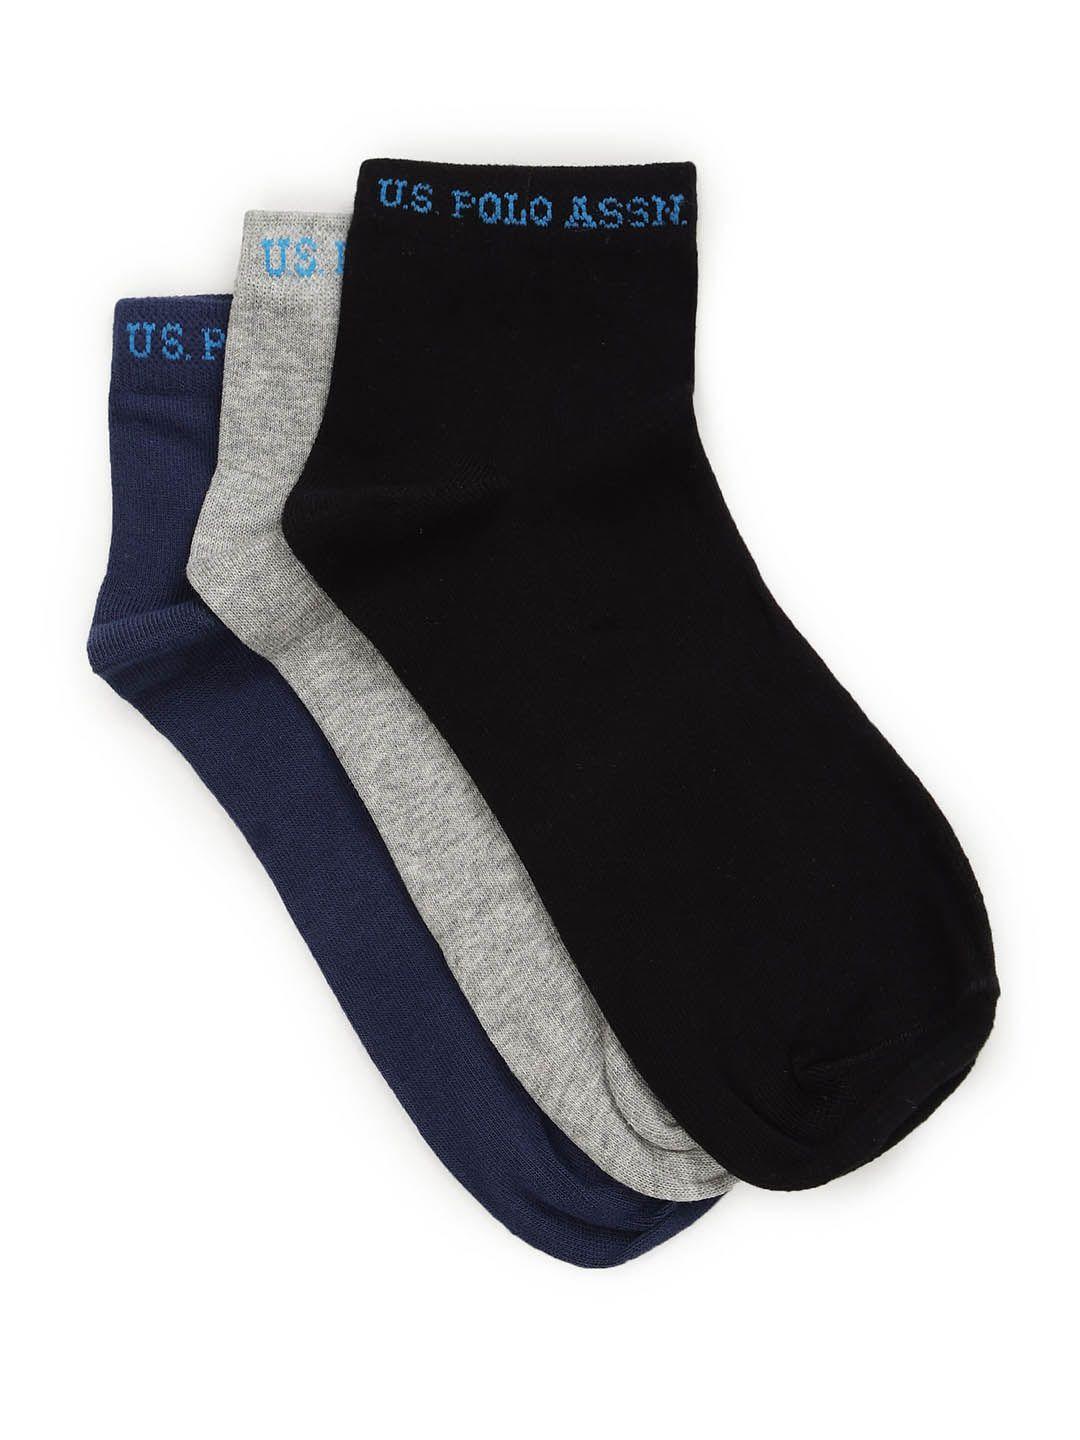 u.s.-polo-assn.-men-pack-of-3-ankle-length-socks